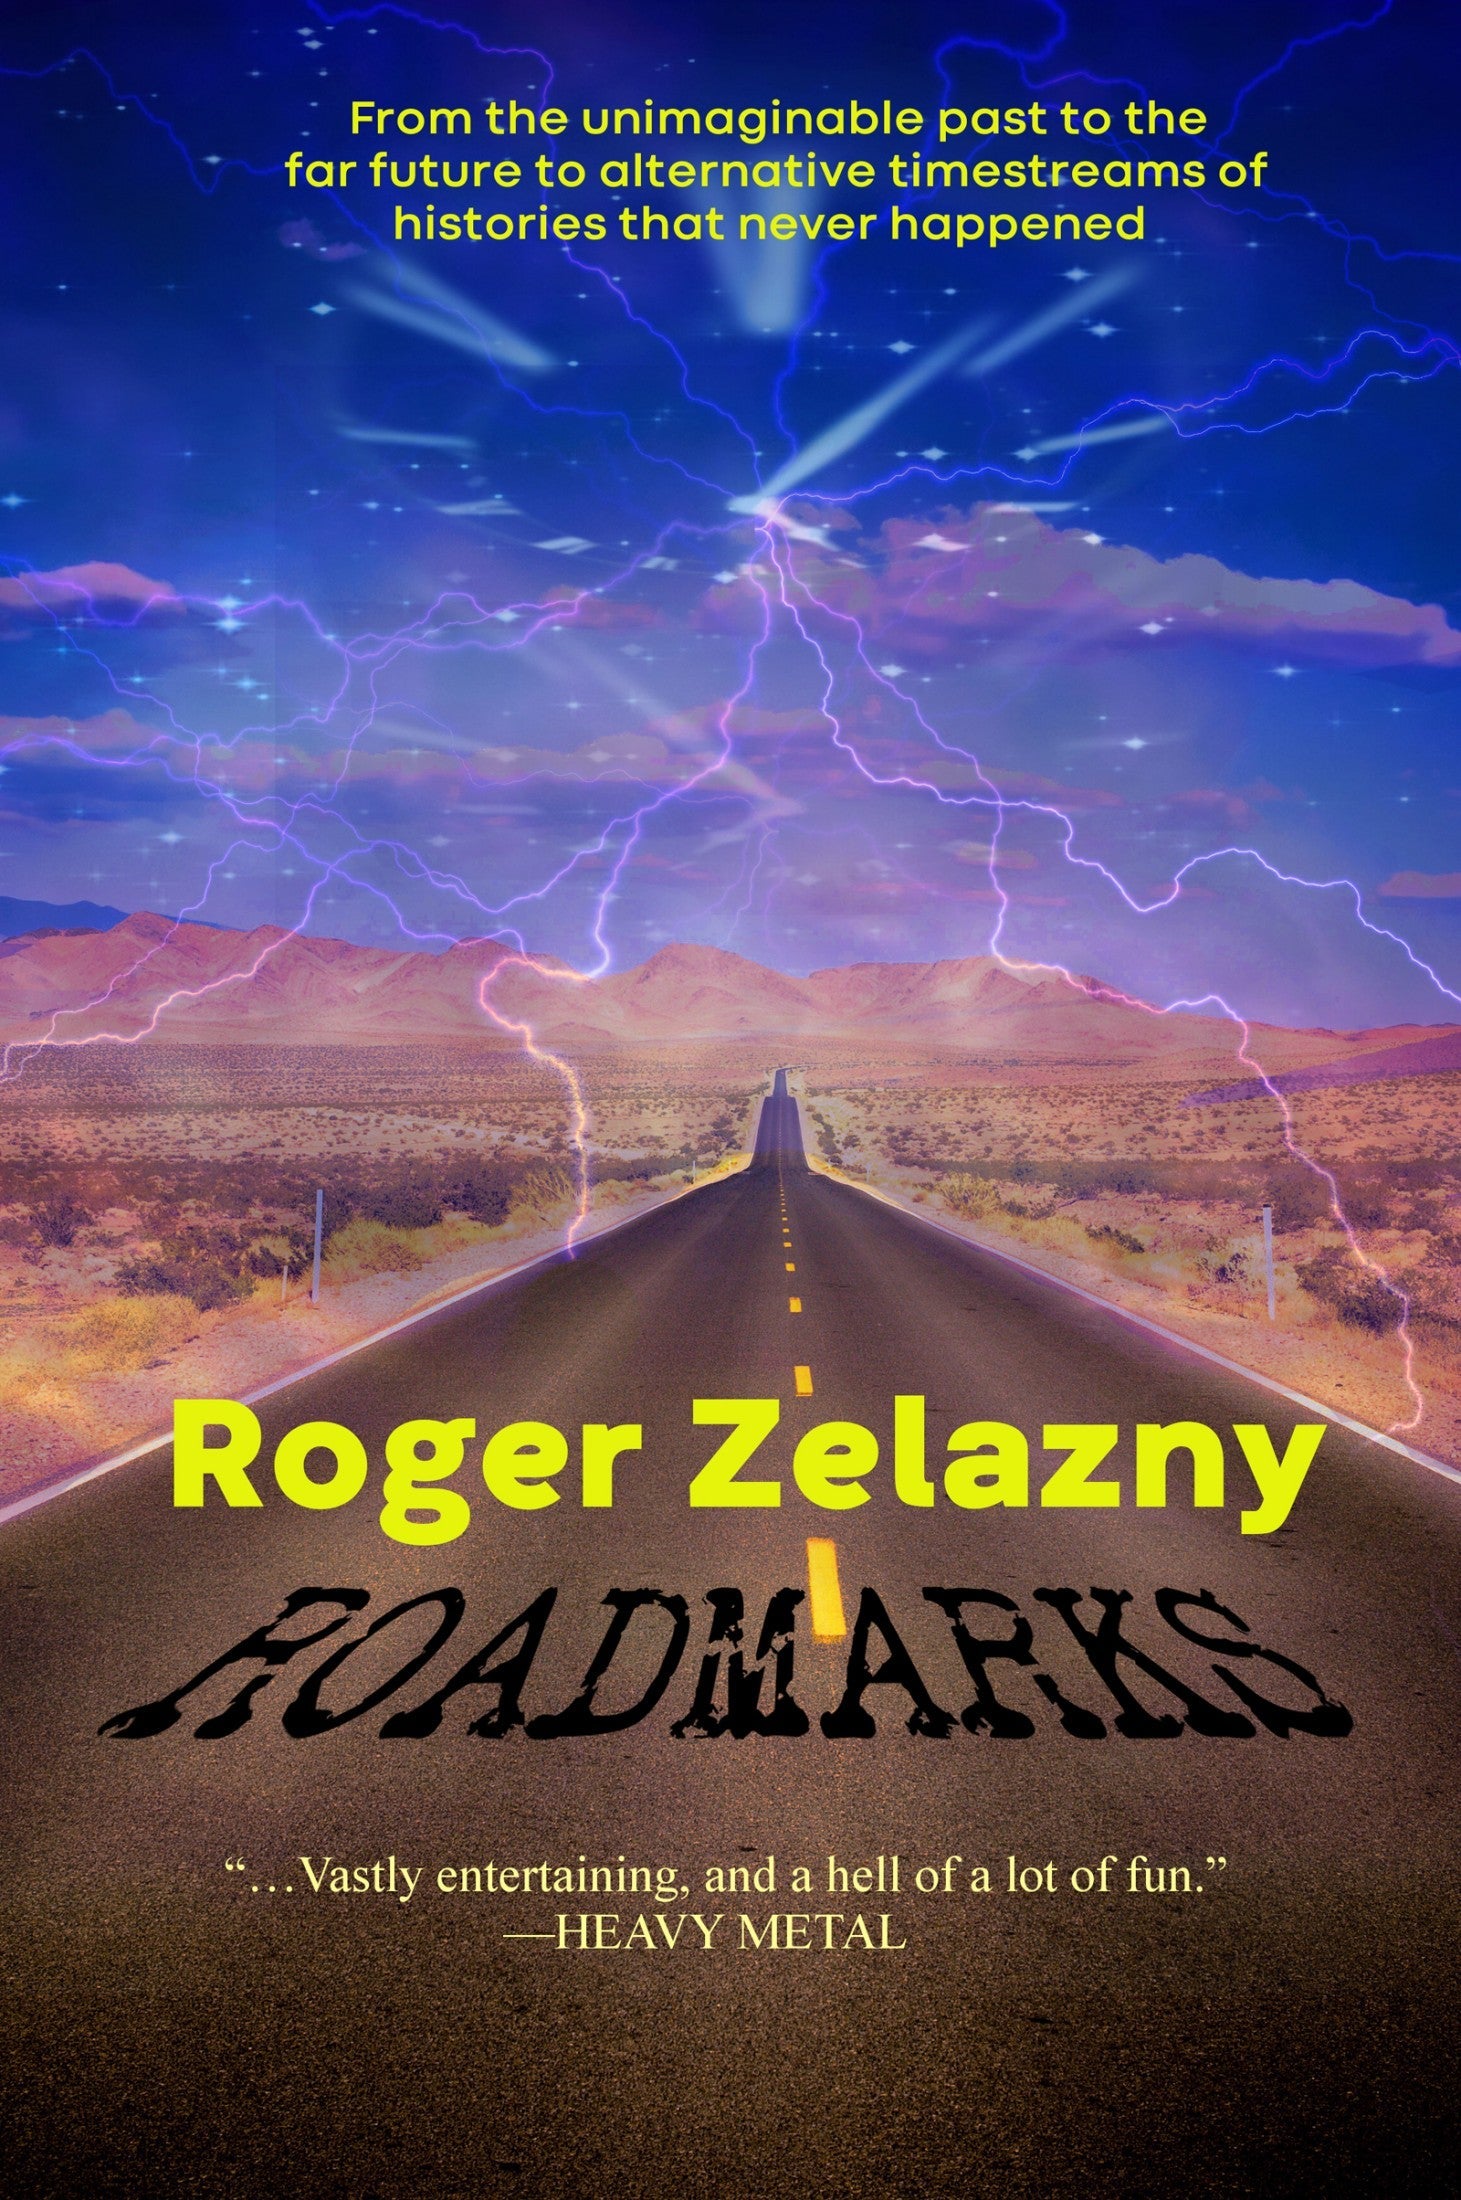 Cover art for Roadmarks.